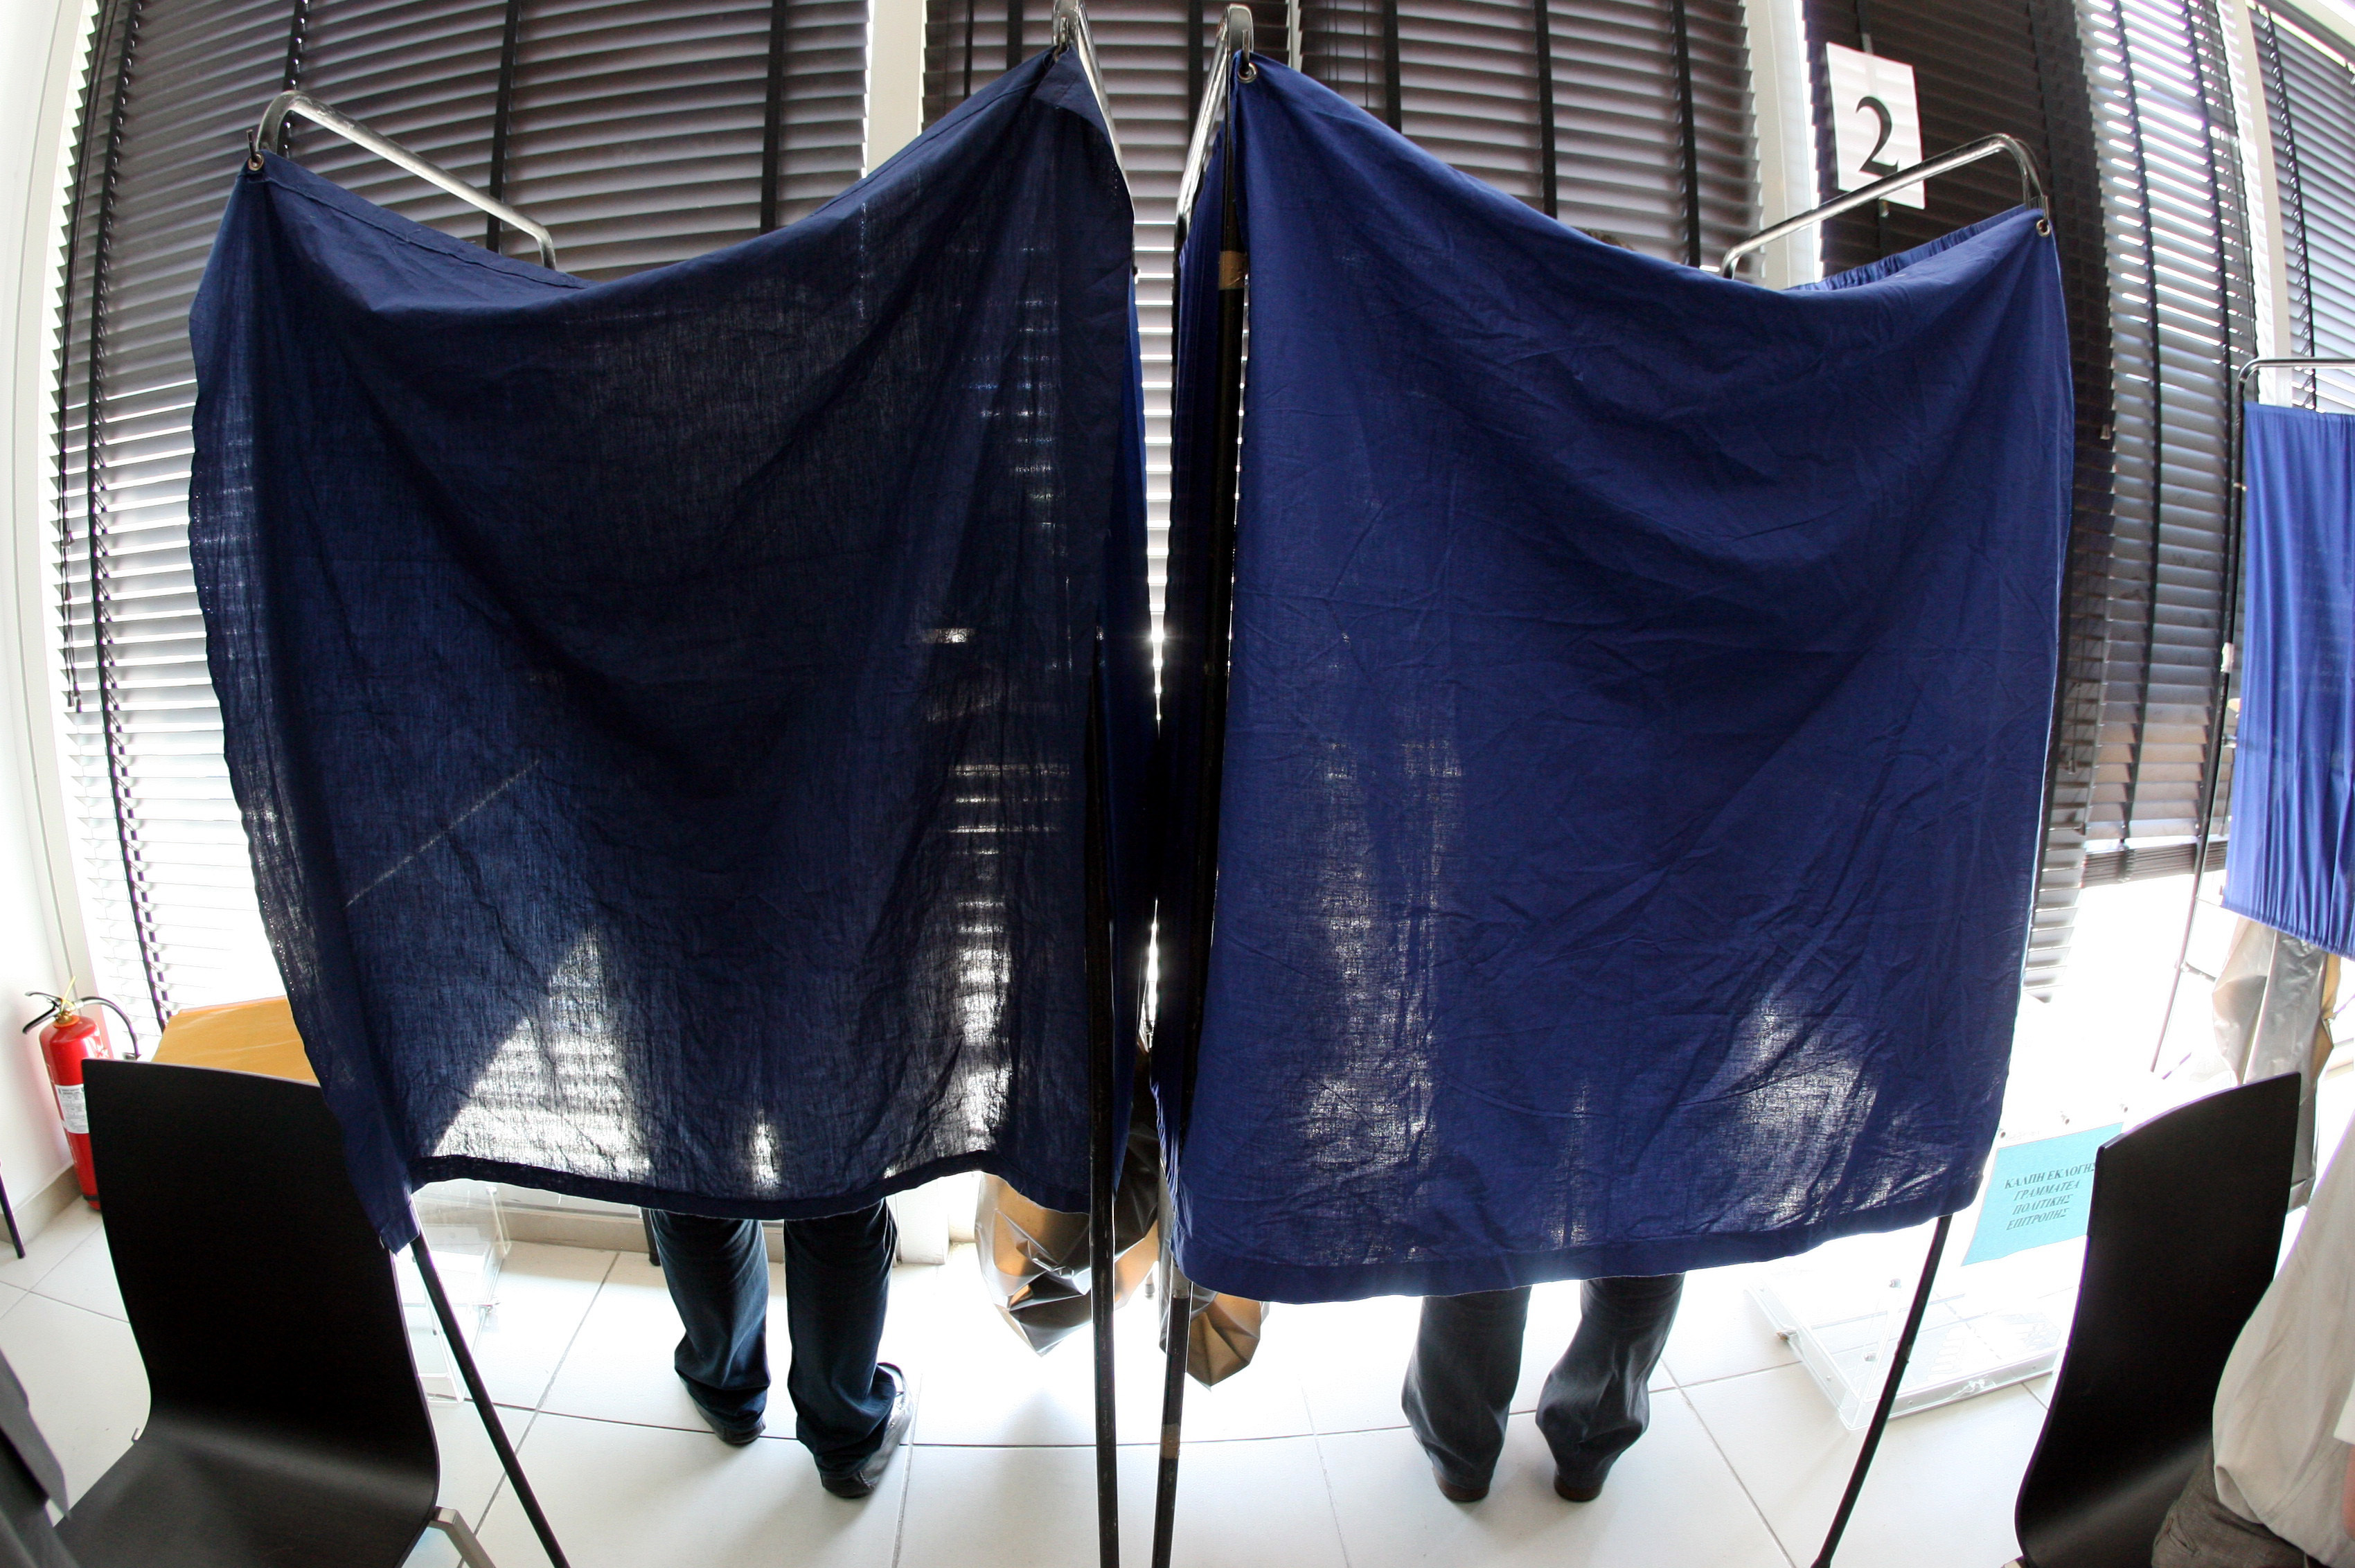 Εκλογές 2014: Όλα όσα θέλετε να ξέρετε πριν φτάσετε μπροστά στην κάλπη